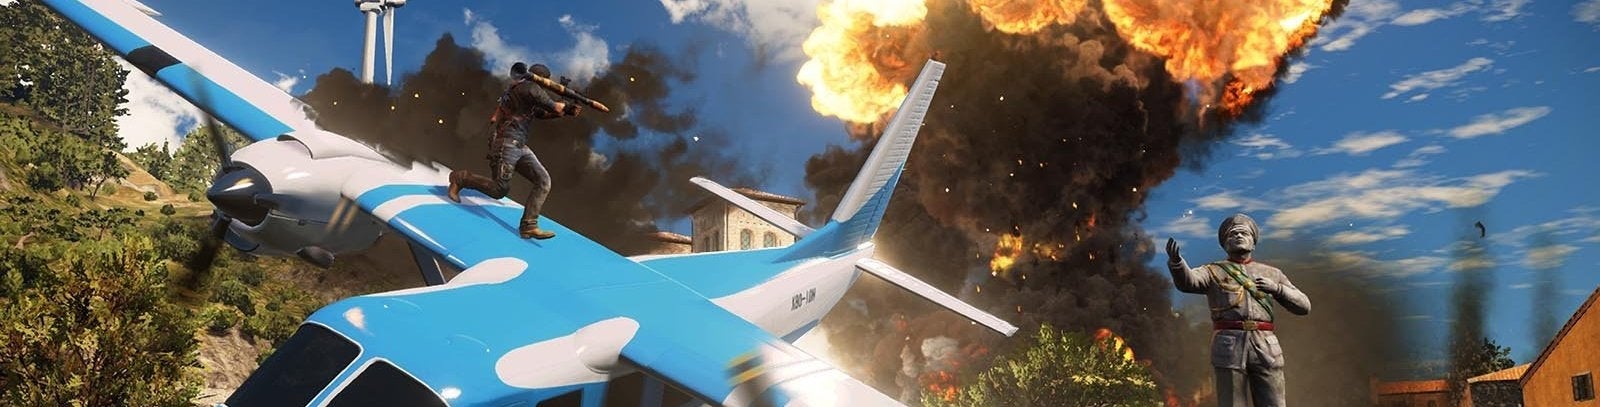 Imagen para Avance E3 2015: Just Cause 3 apuesta por la destrucción creativa